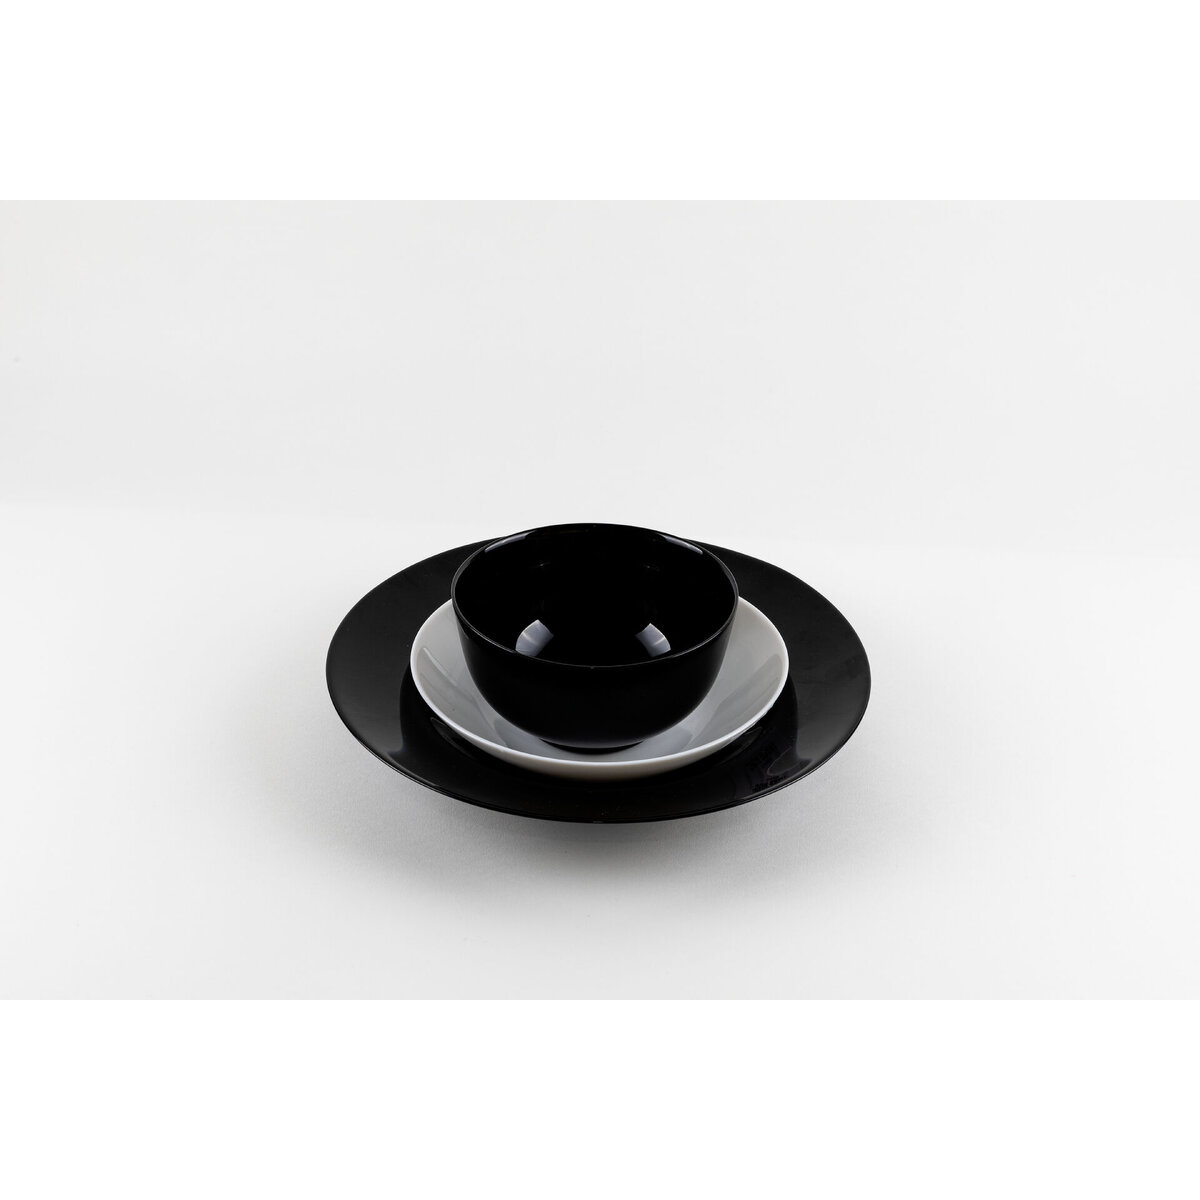 Hartglasgeschirr "Evolution" schwarz Platte flach oval 33x25 cm (4)